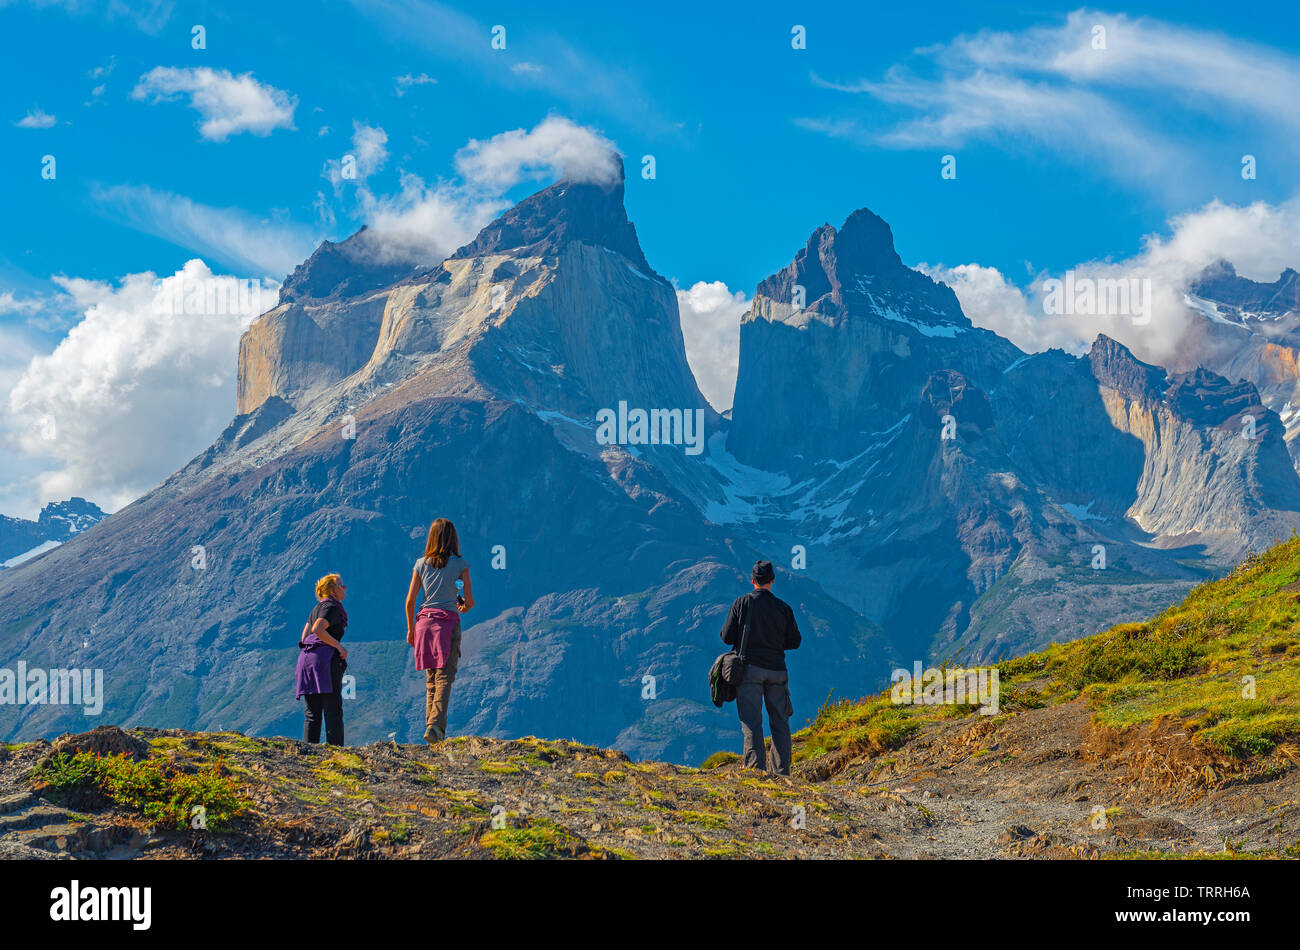 Eine Gruppe von drei Touristen auf der Suche nach den Anden Gipfel der Cuernos Del Paine im chilenischen Patagonien. Unscharfer Vordergrund, scharfen Hintergrund. Stockfoto